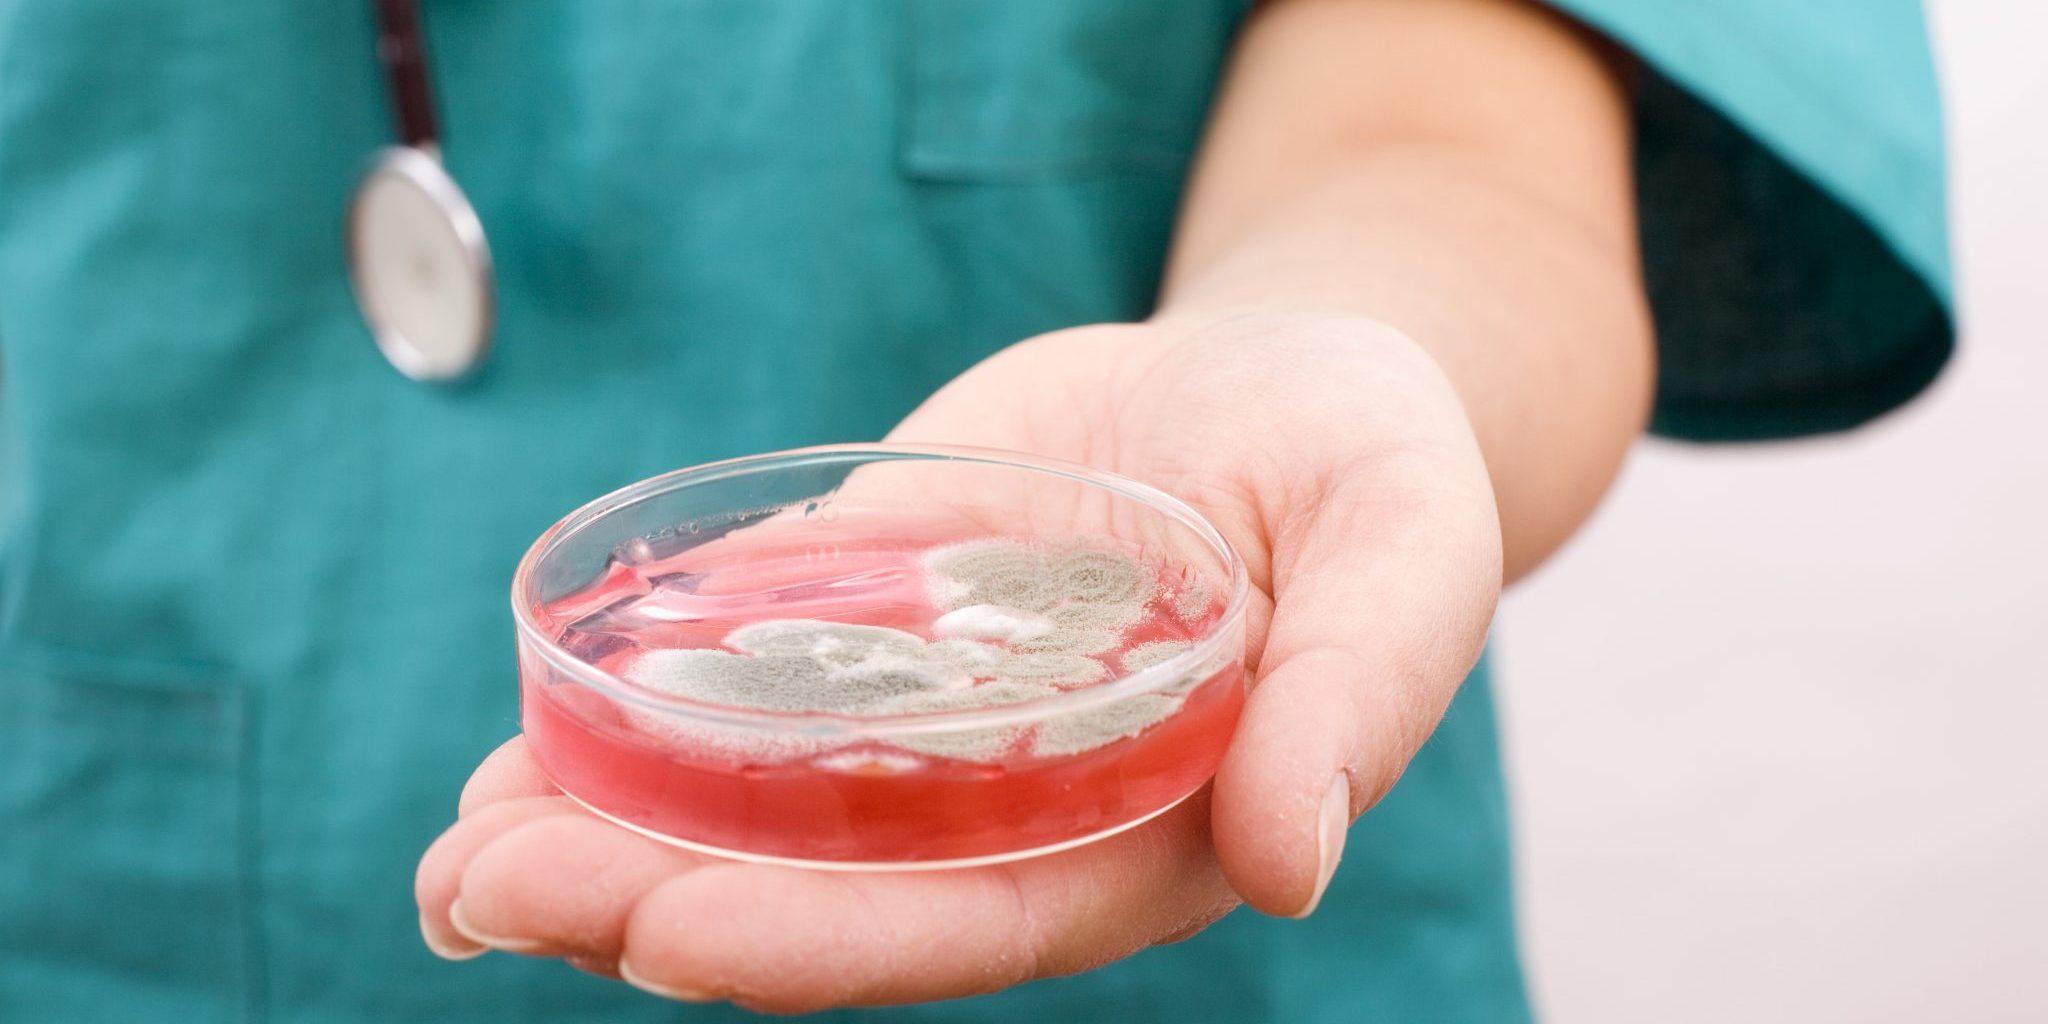 Hoitopuku päällä olevalla henkilöllä on lähikuvassa kädessä Petrimalja, jossa punaista nestettä ja homekertymää.